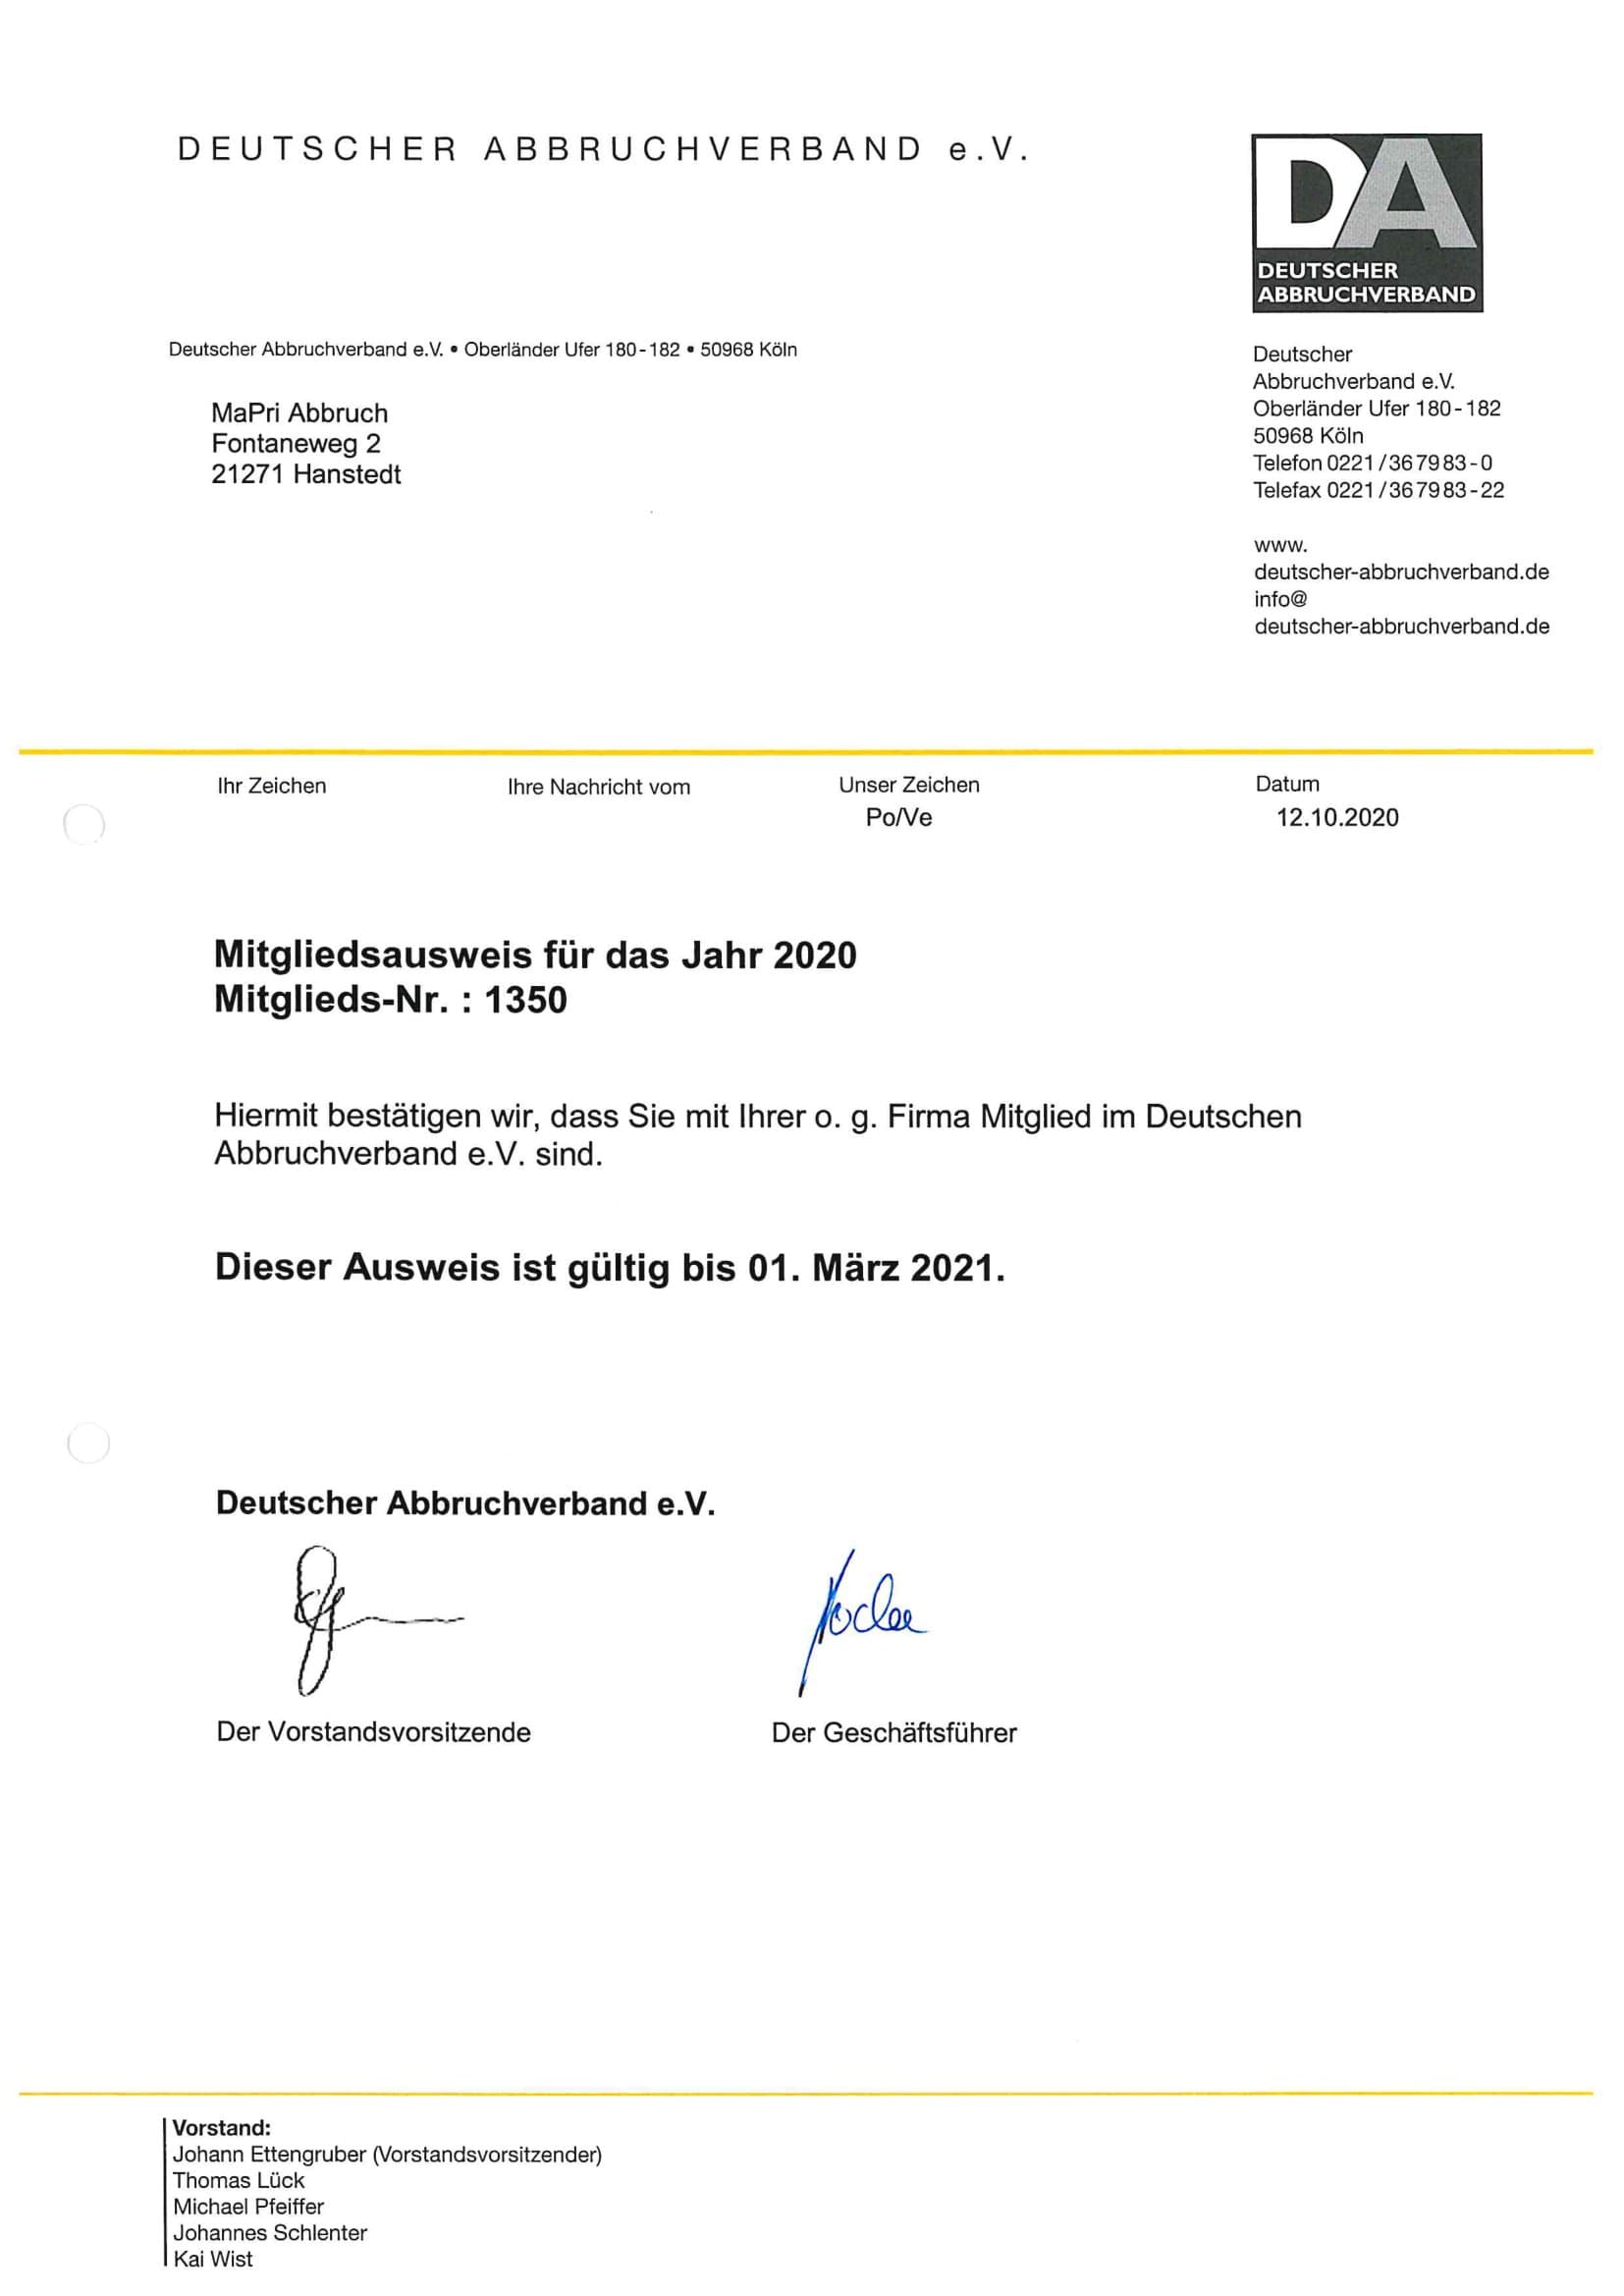 Deutscher Abbruchverband - Mitgliedschaft 2020